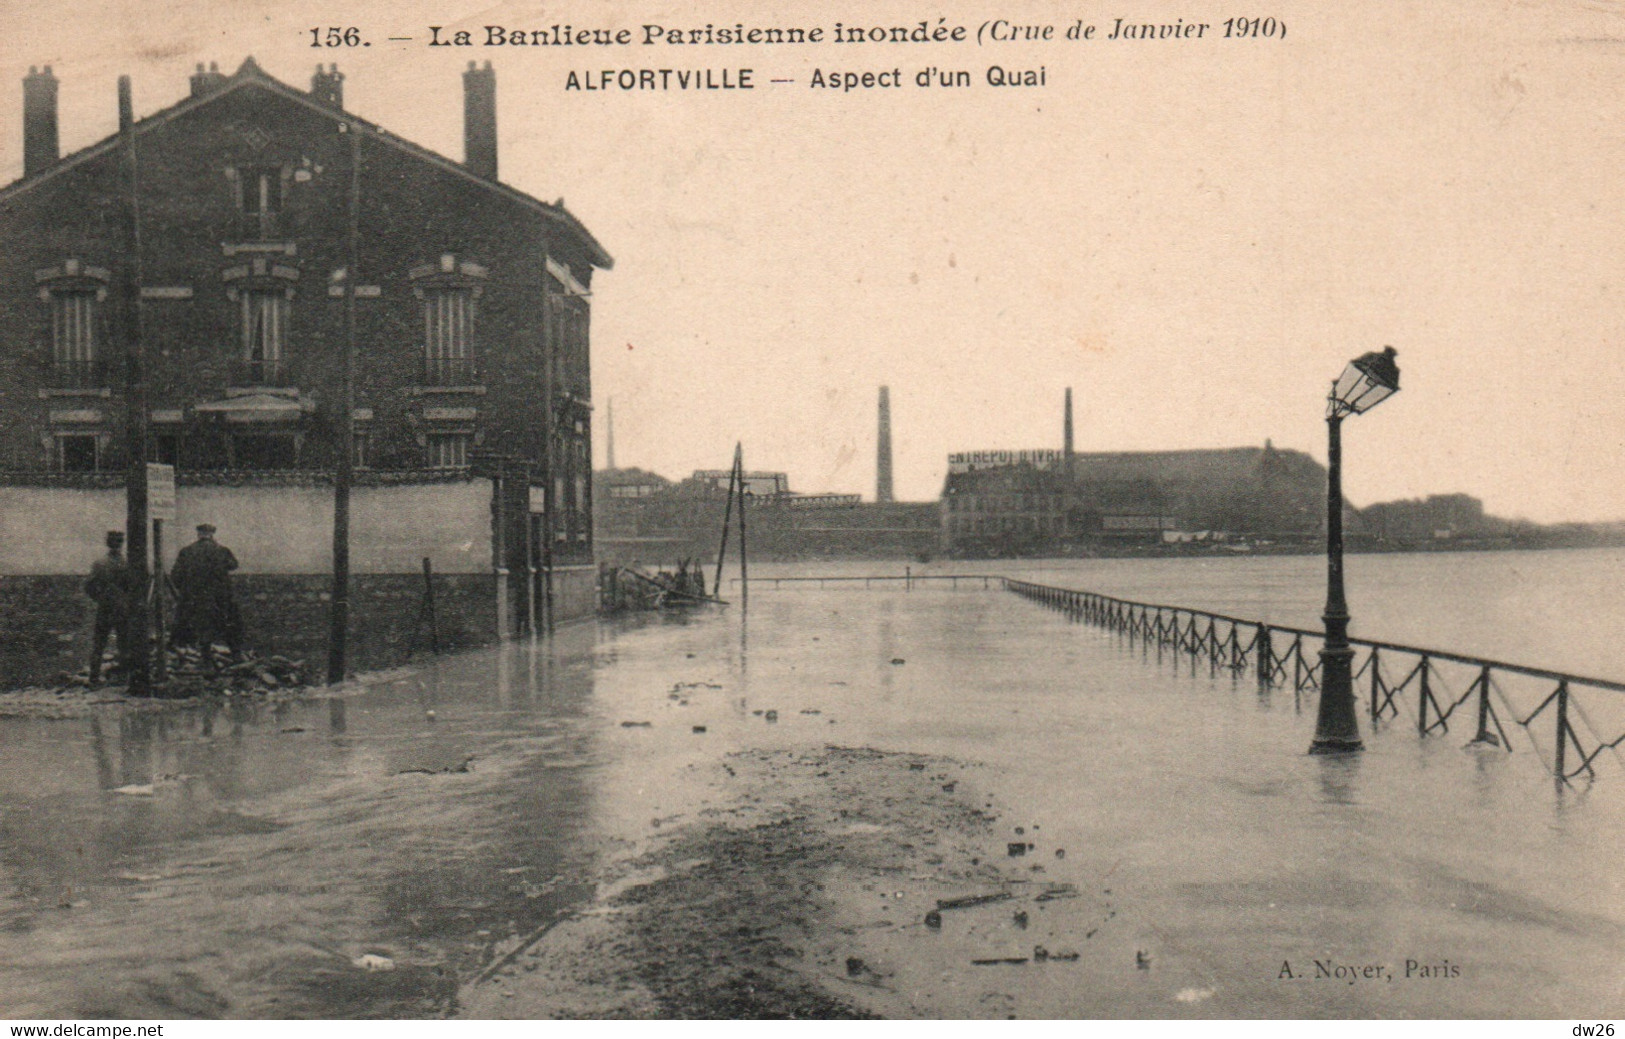 La Banlieue Parisienne Inondée: Crue De Janvier 1910 - Alfortville: Aspect D'un Quai - Carte Noyer N° 156 Non Circulée - Überschwemmungen